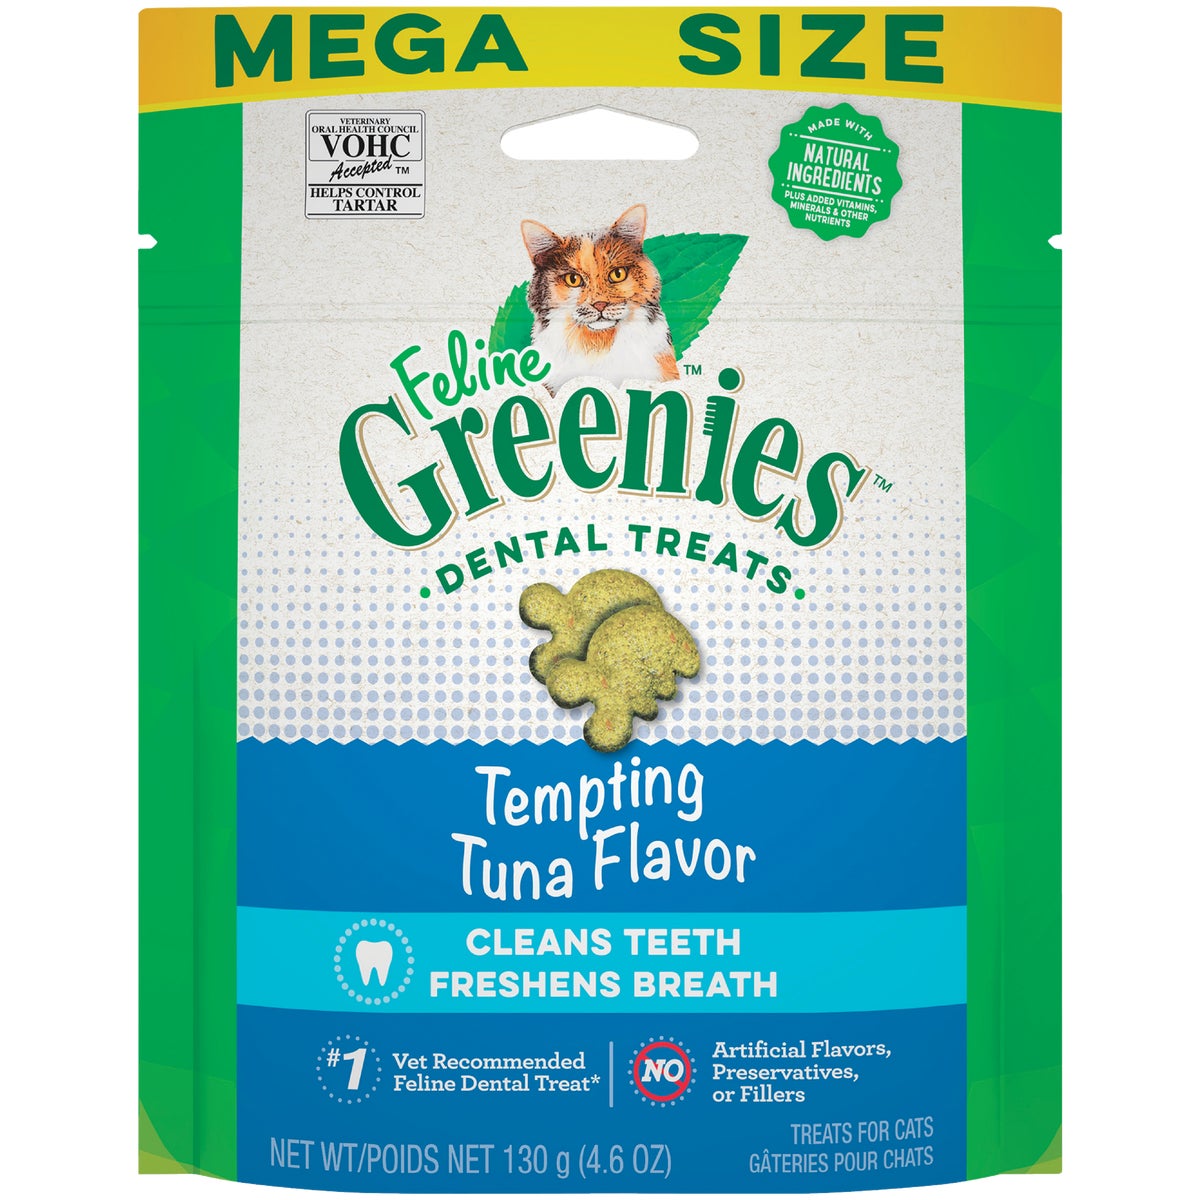 Greenies Tempting Tuna 4.6 Oz. Dental Cat Treats